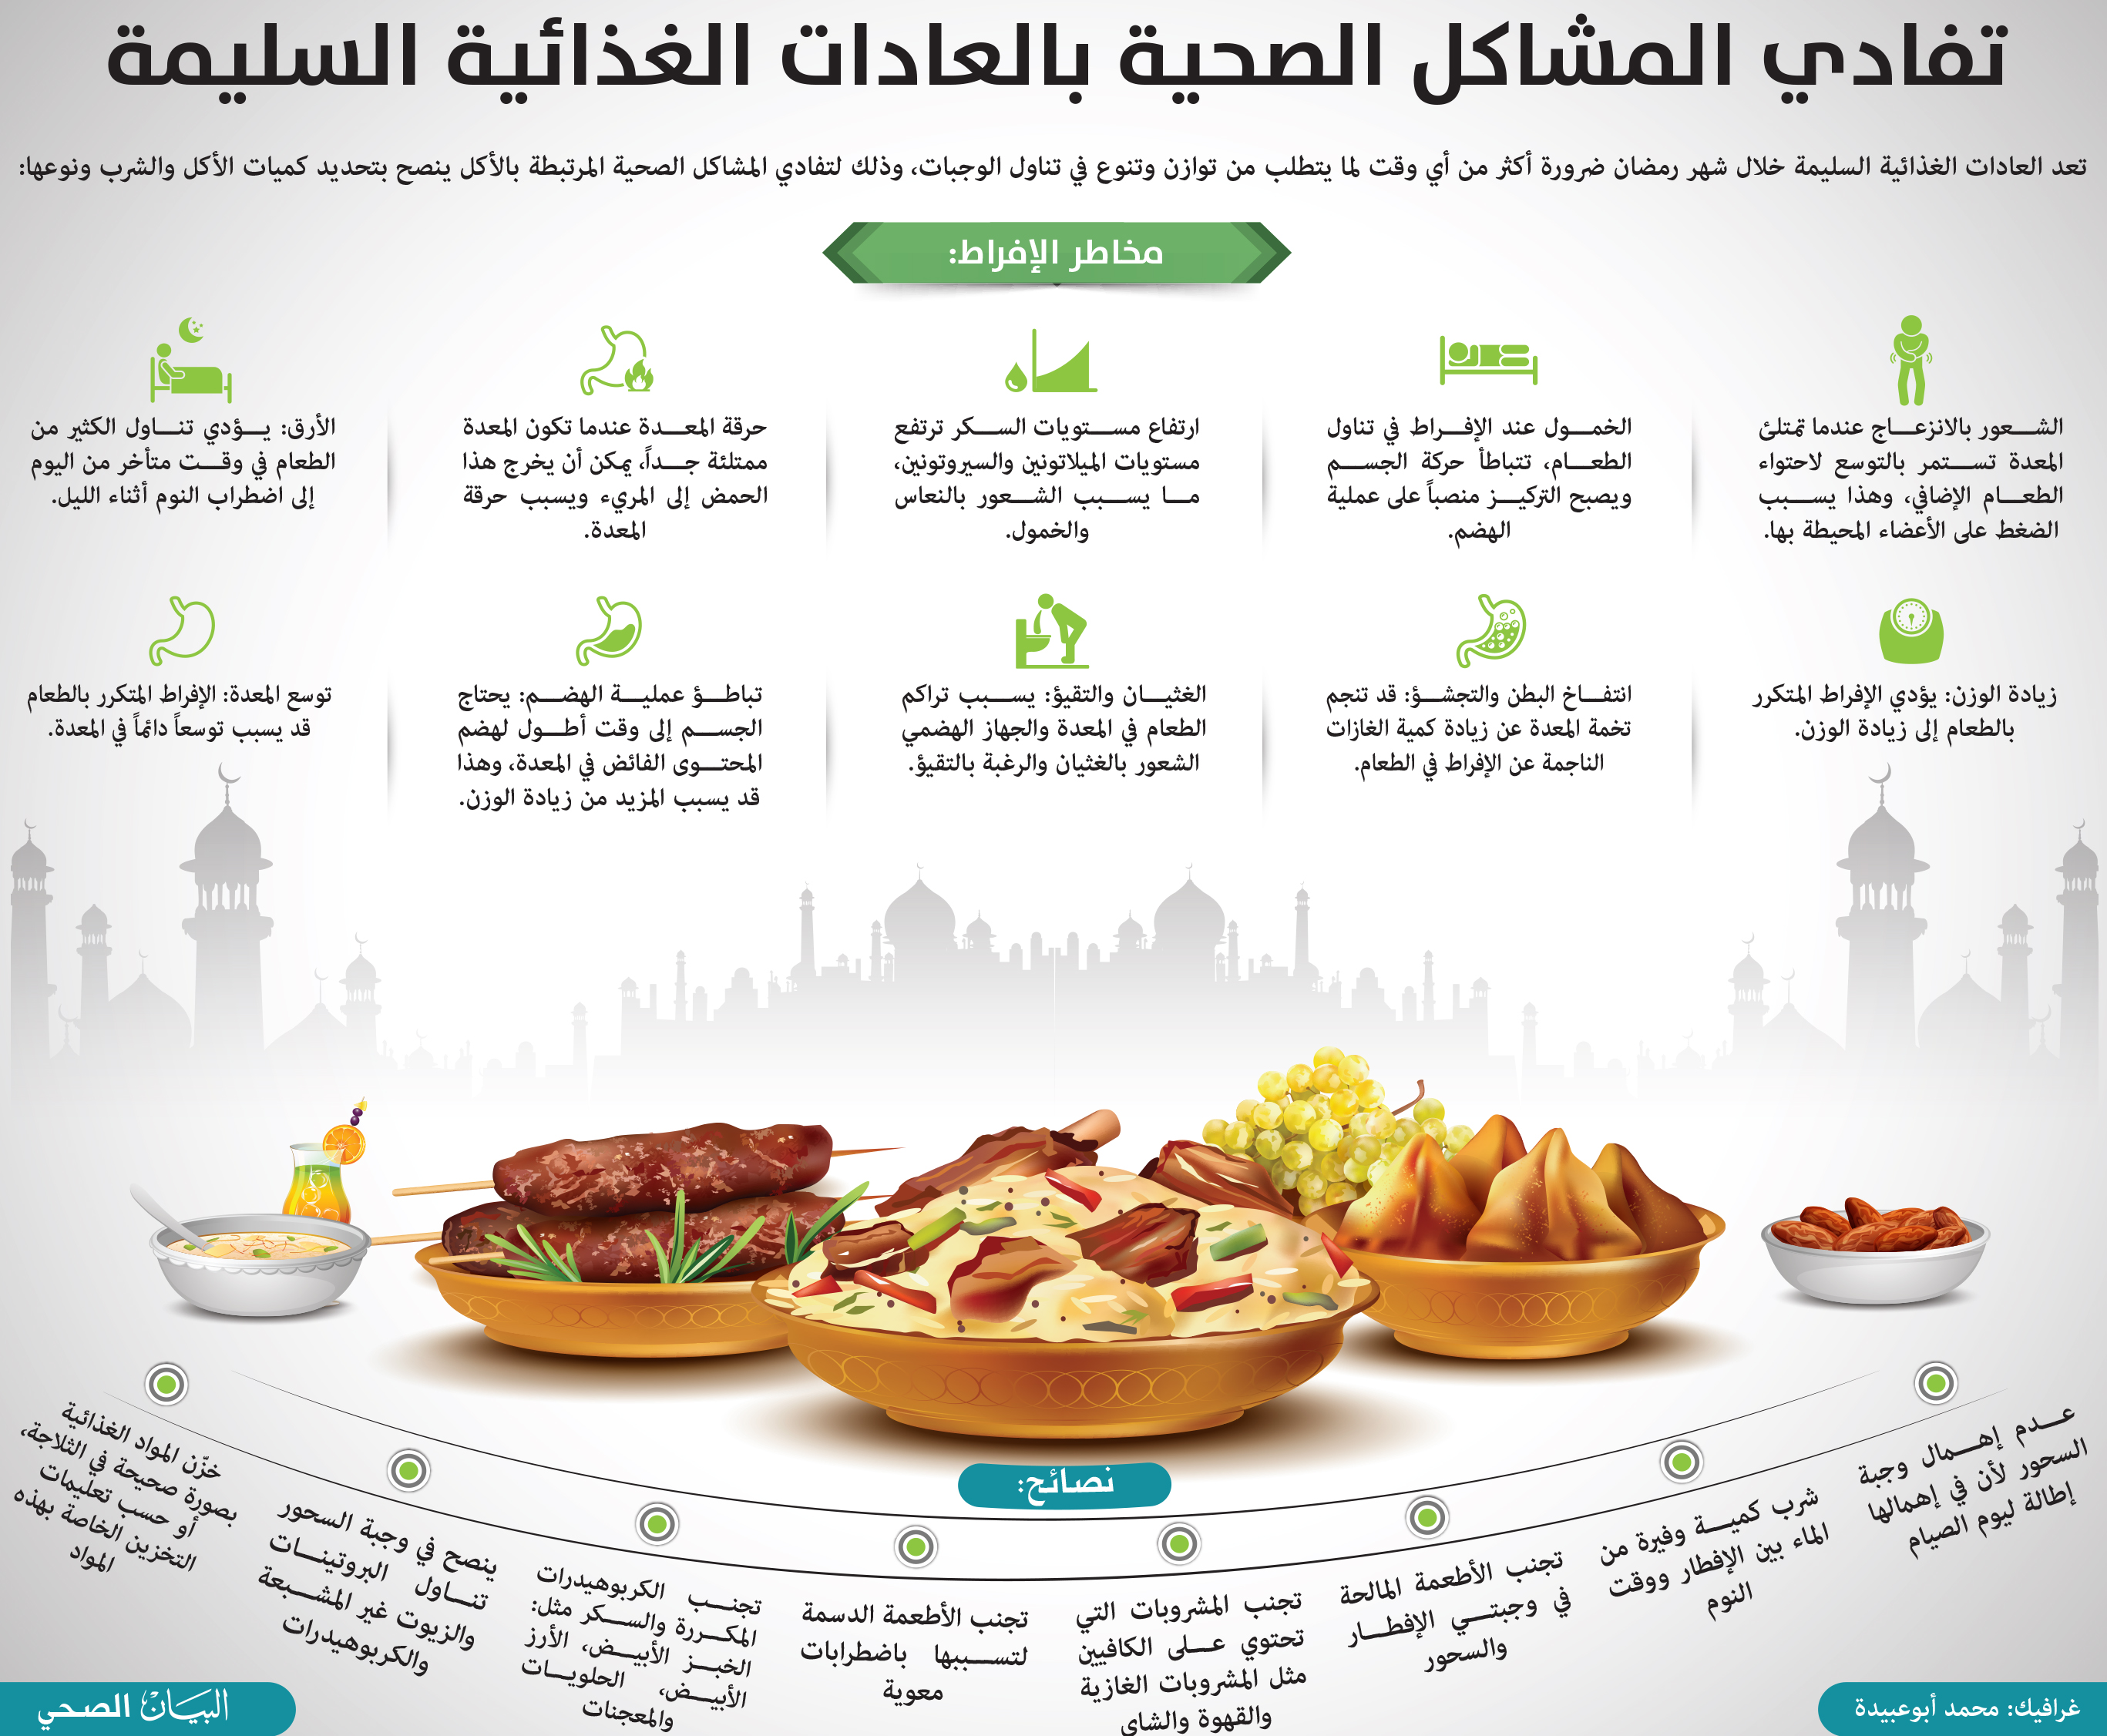 تعرف على فوائد الصيام وأثرها على الجسم في شهر رمضان - كيفية تجنب العادات الغذائية الضارة أثناء شهر رمضان